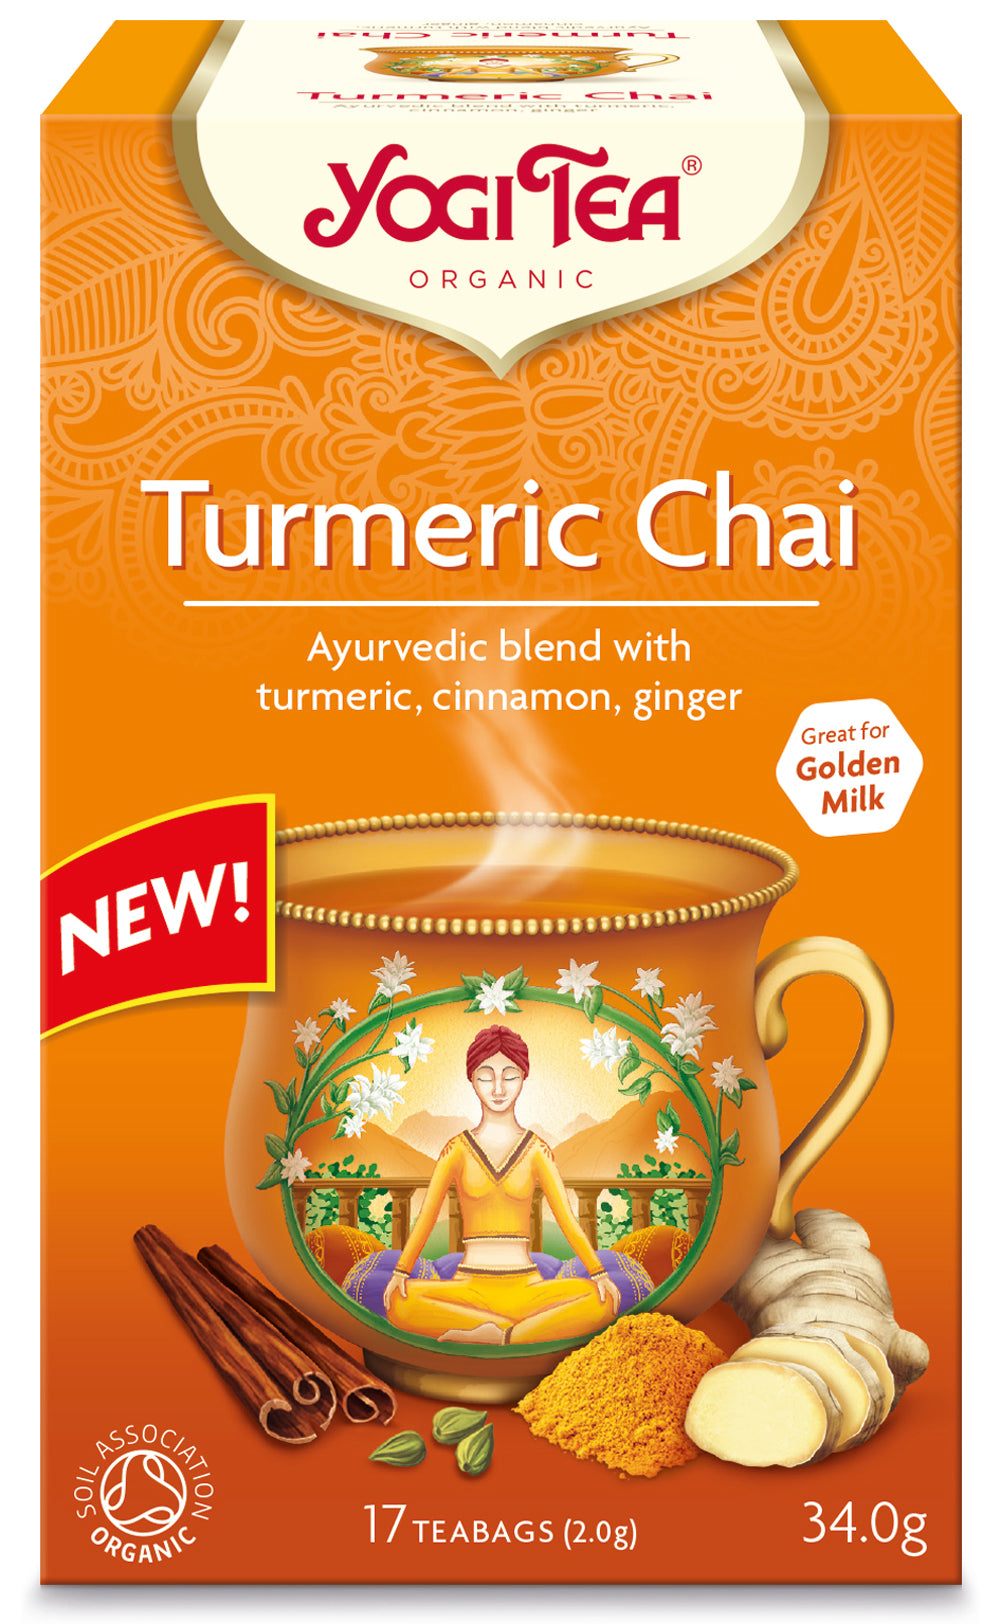 Turmeric Chai - Yogi tea